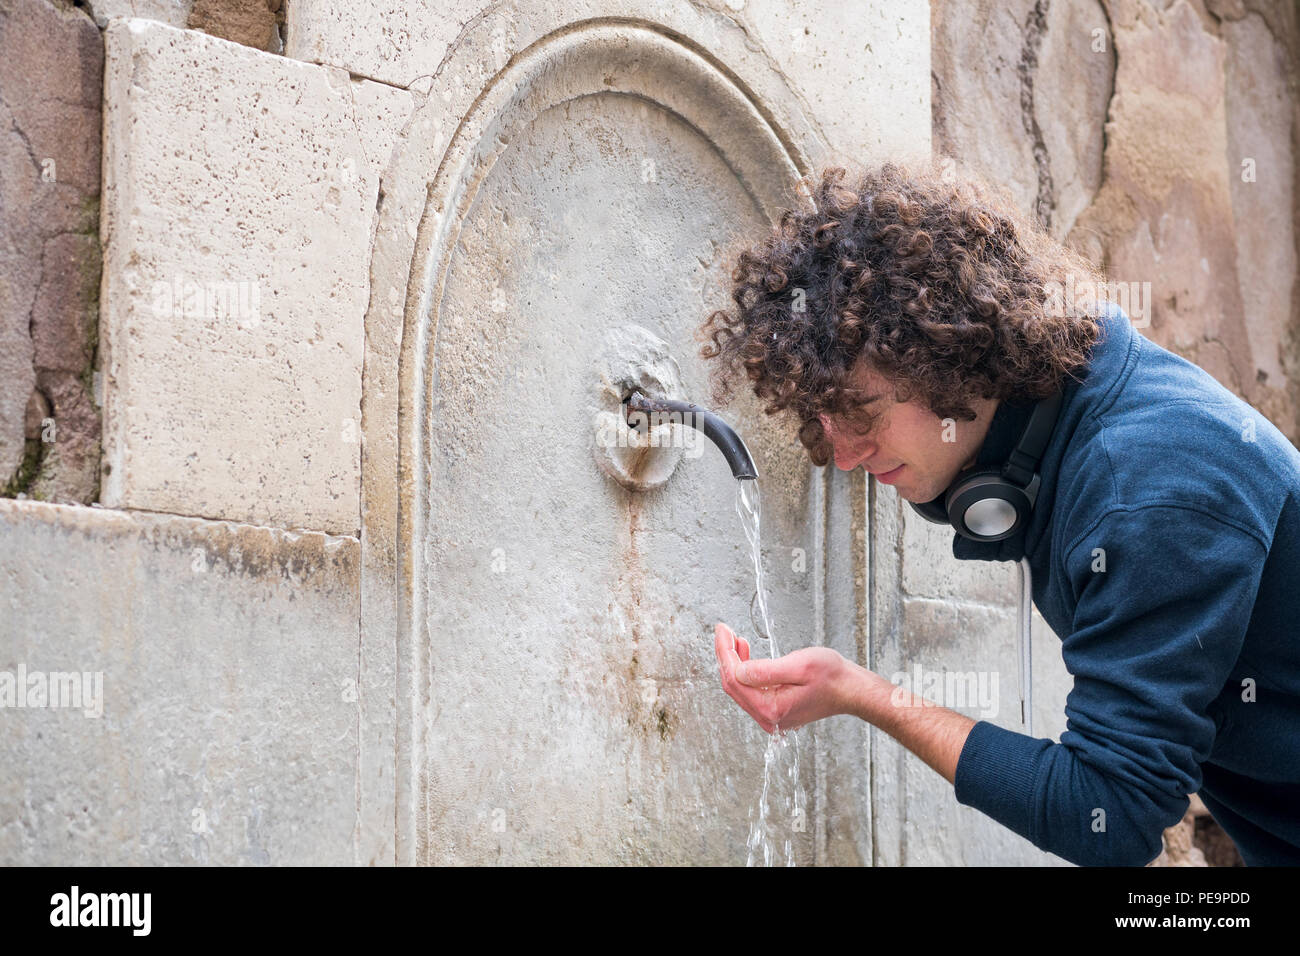 Jeune homme boit de l'eau d'une fontaine Banque D'Images